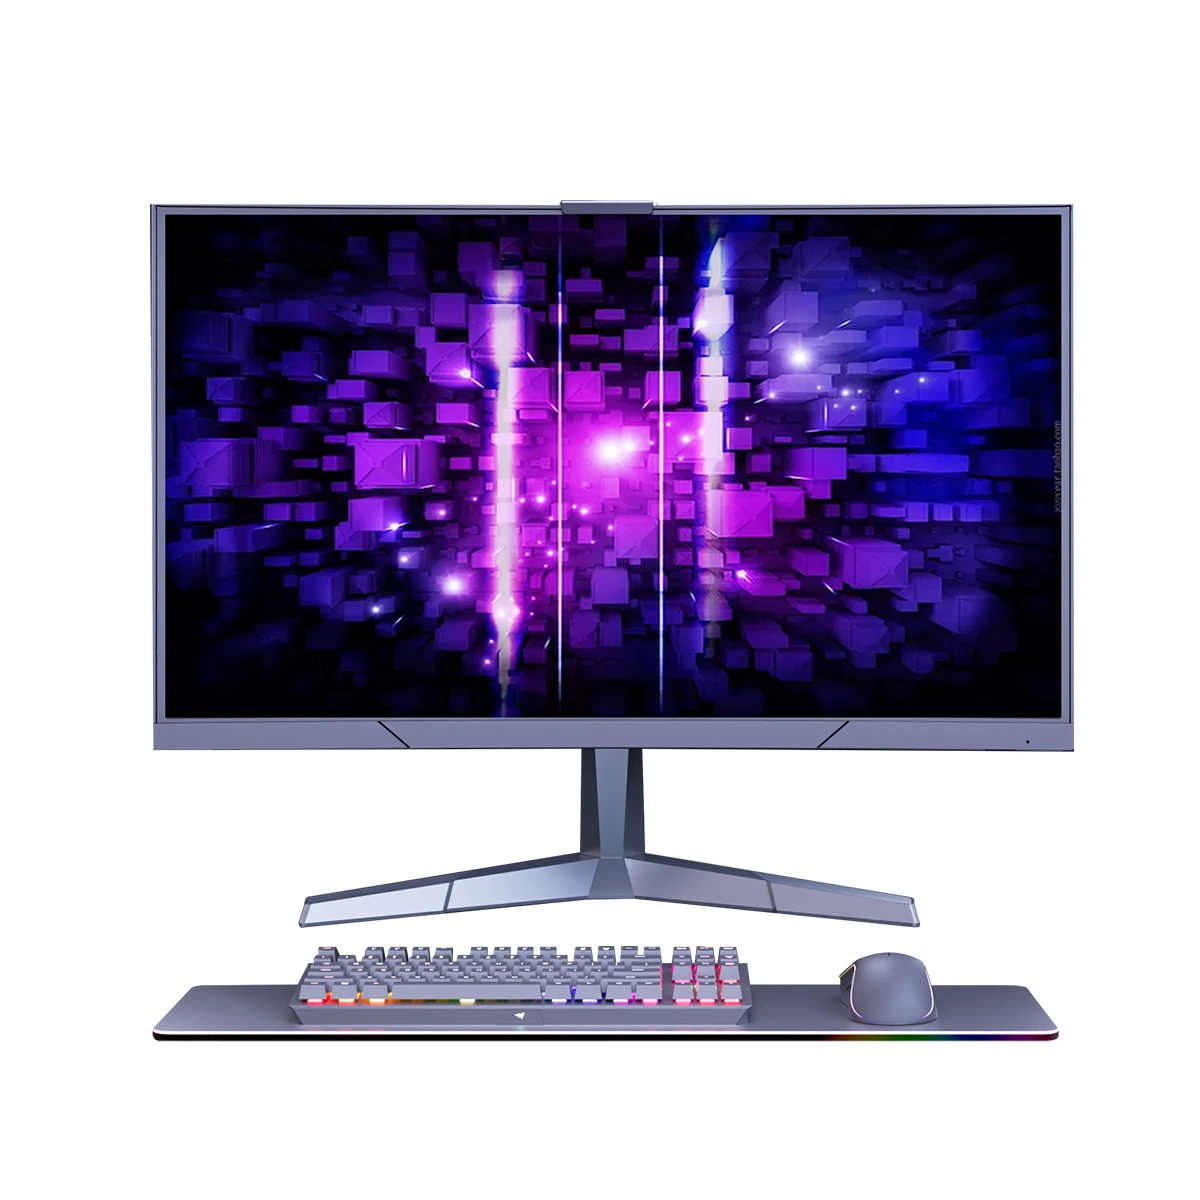 Podświetlenie monitora/TV Spacetronik Glow One